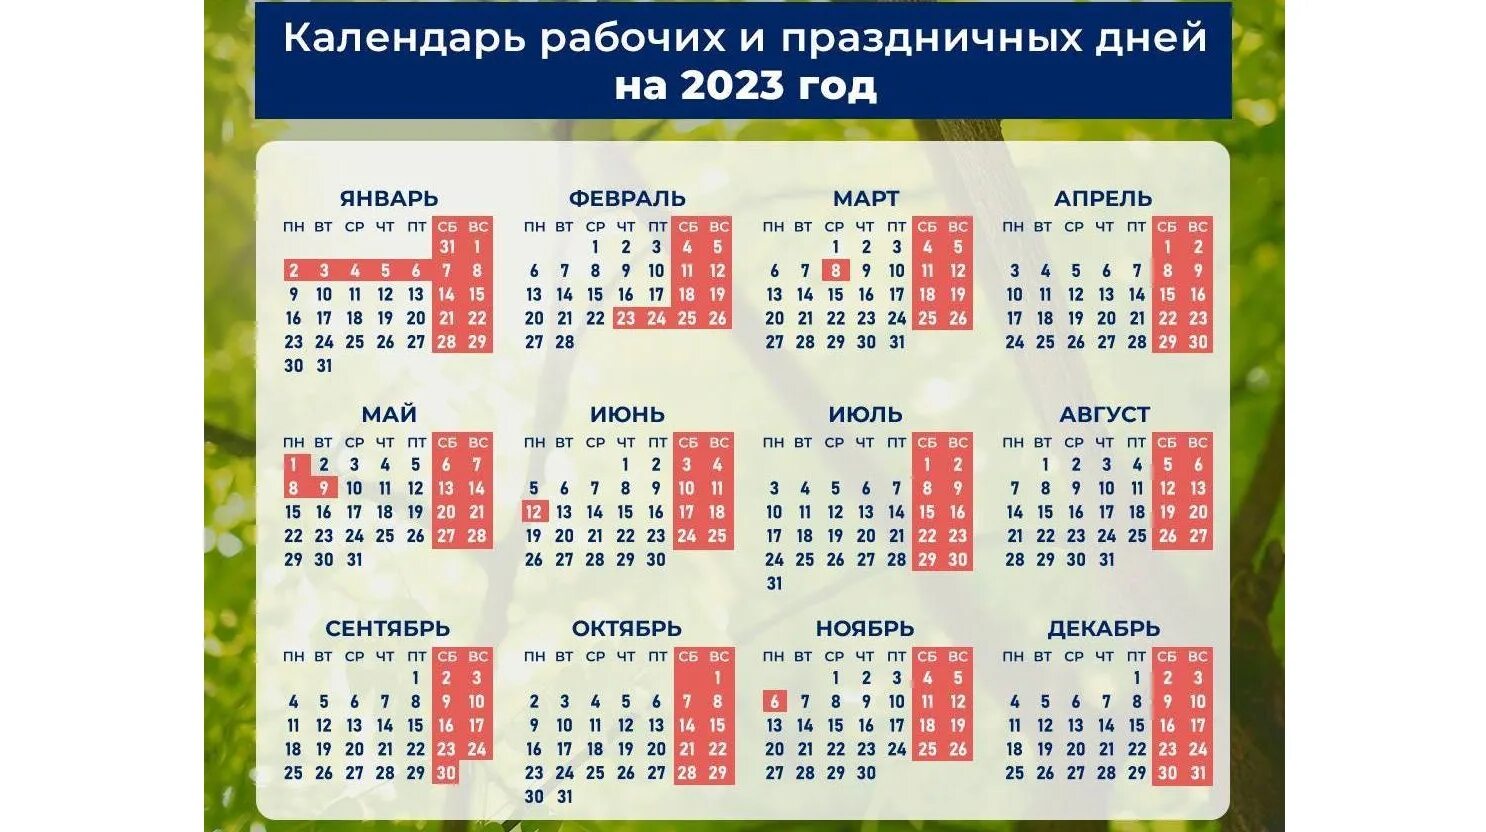 Как мы отдыхаем в мае месяце. Календарь праздников. Календарные праздники на 2023 год. Календарь праздников новый год 2023 в России. Календарь праздников на 2023 год в РО.